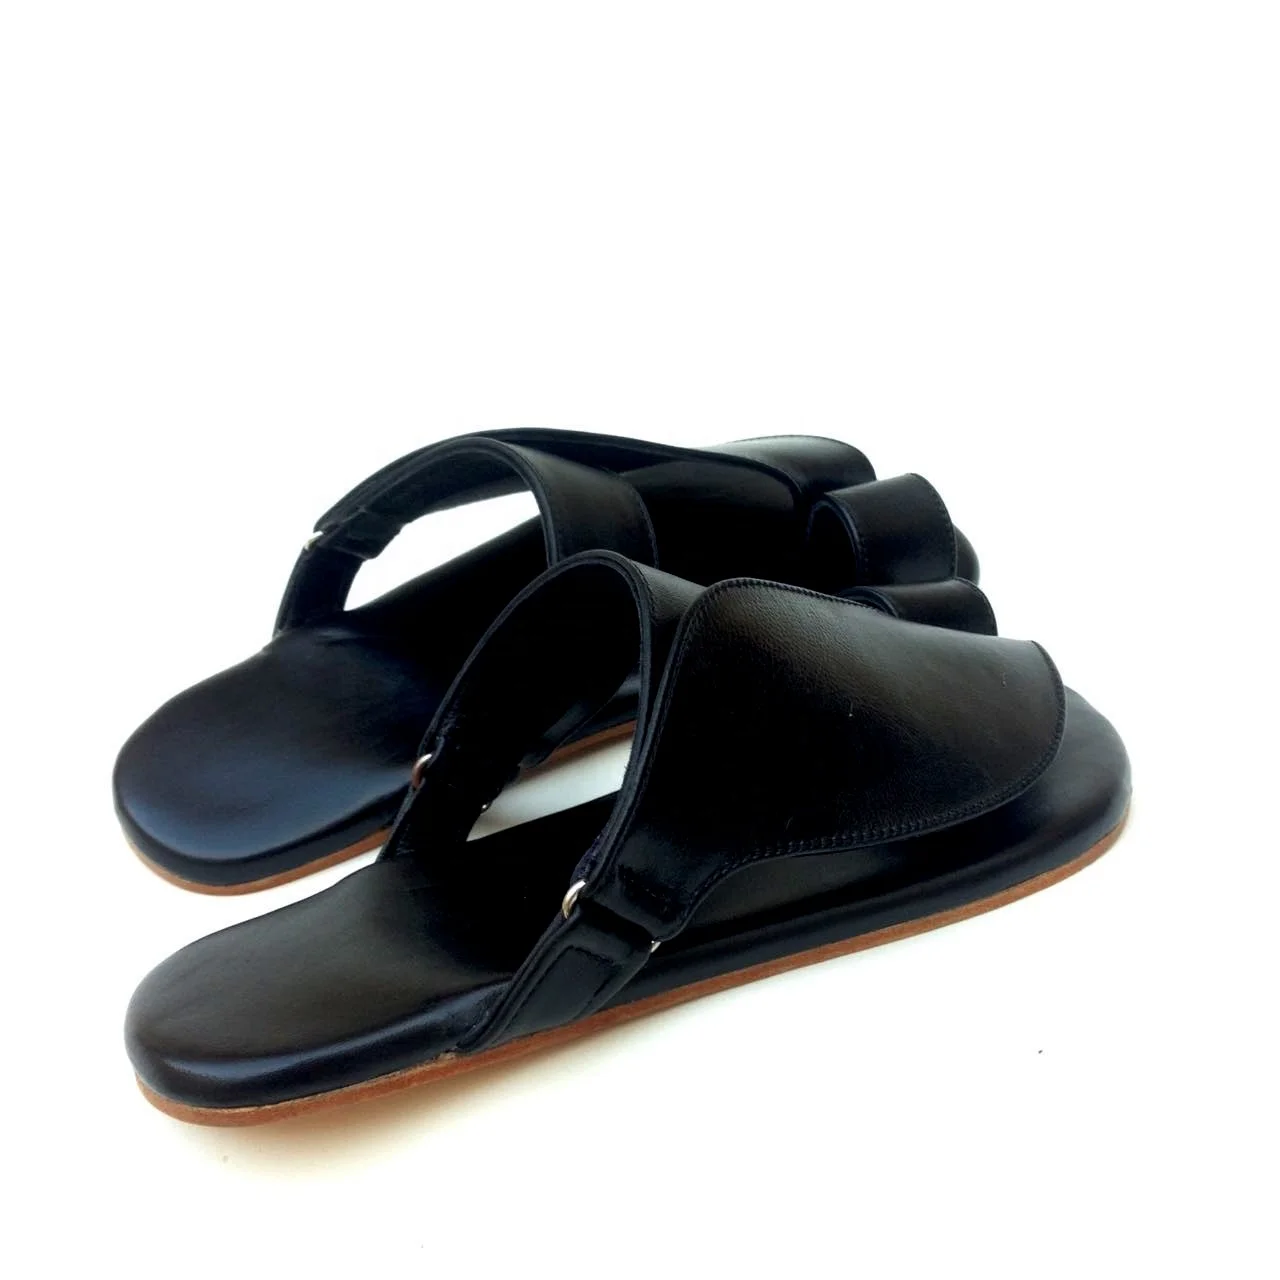 Designer Sandals for Men